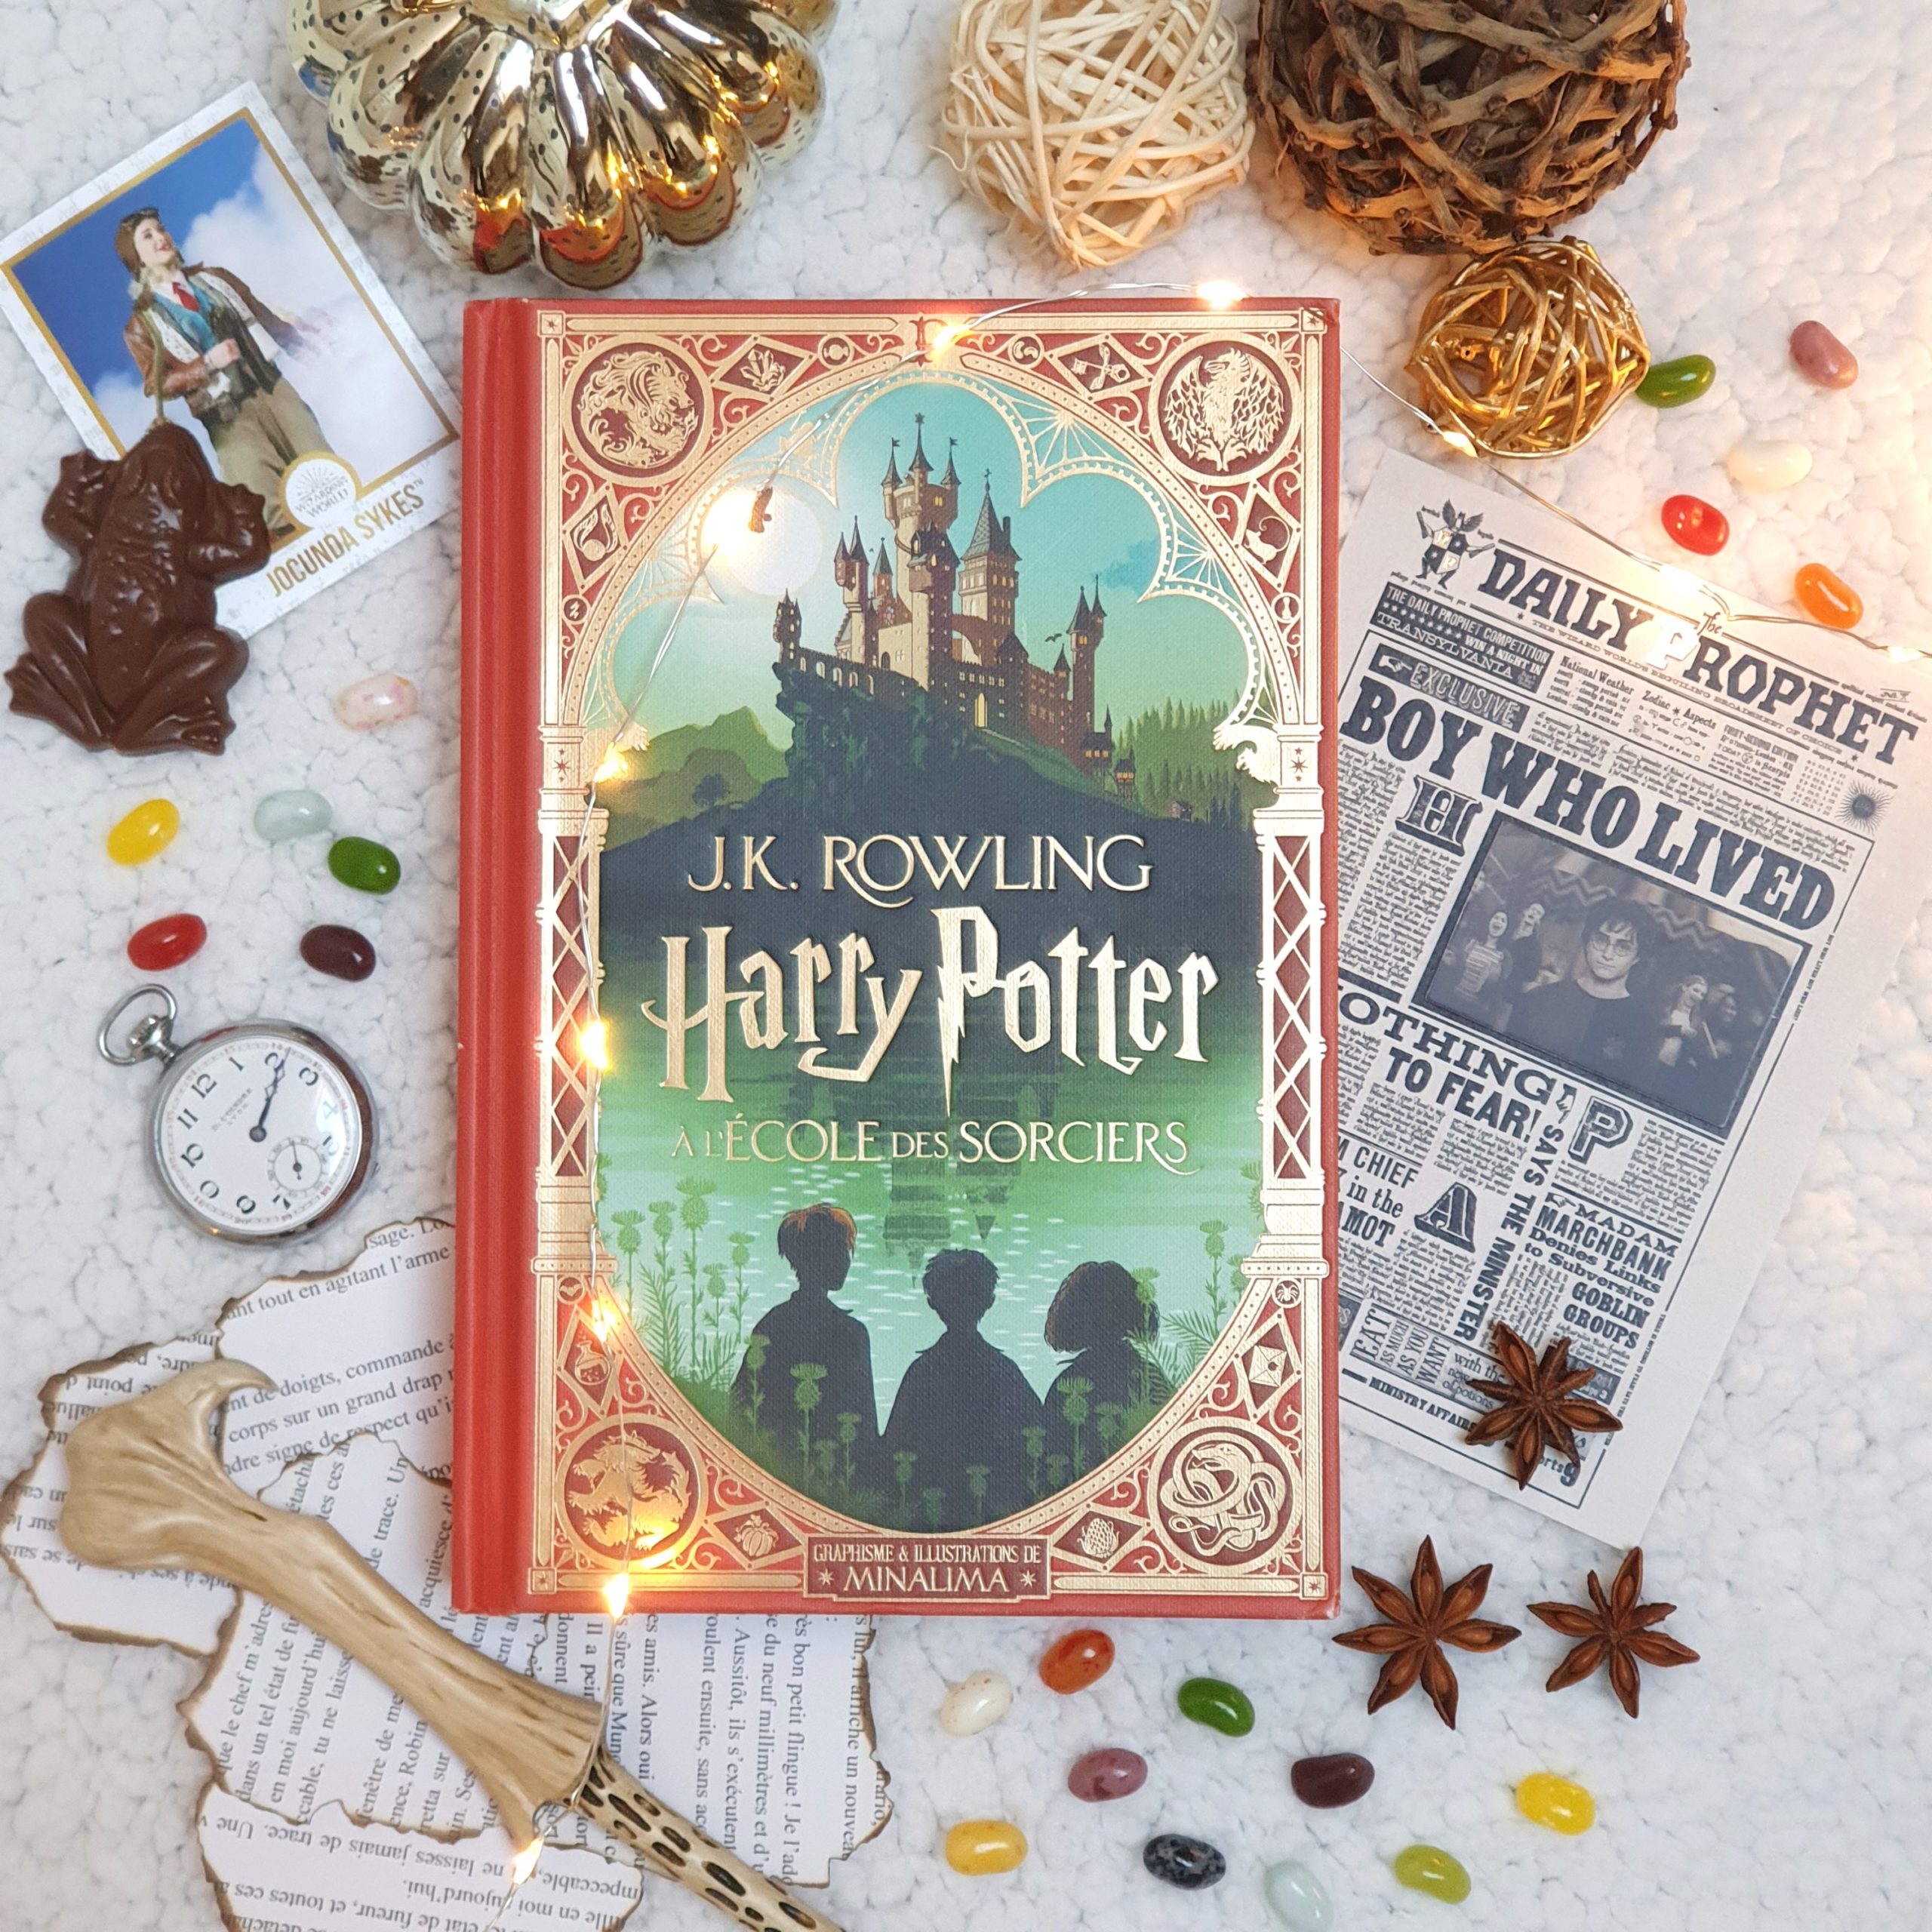 Harry Potter à l'école des sorciers - J. K. Rowling | Chroniques